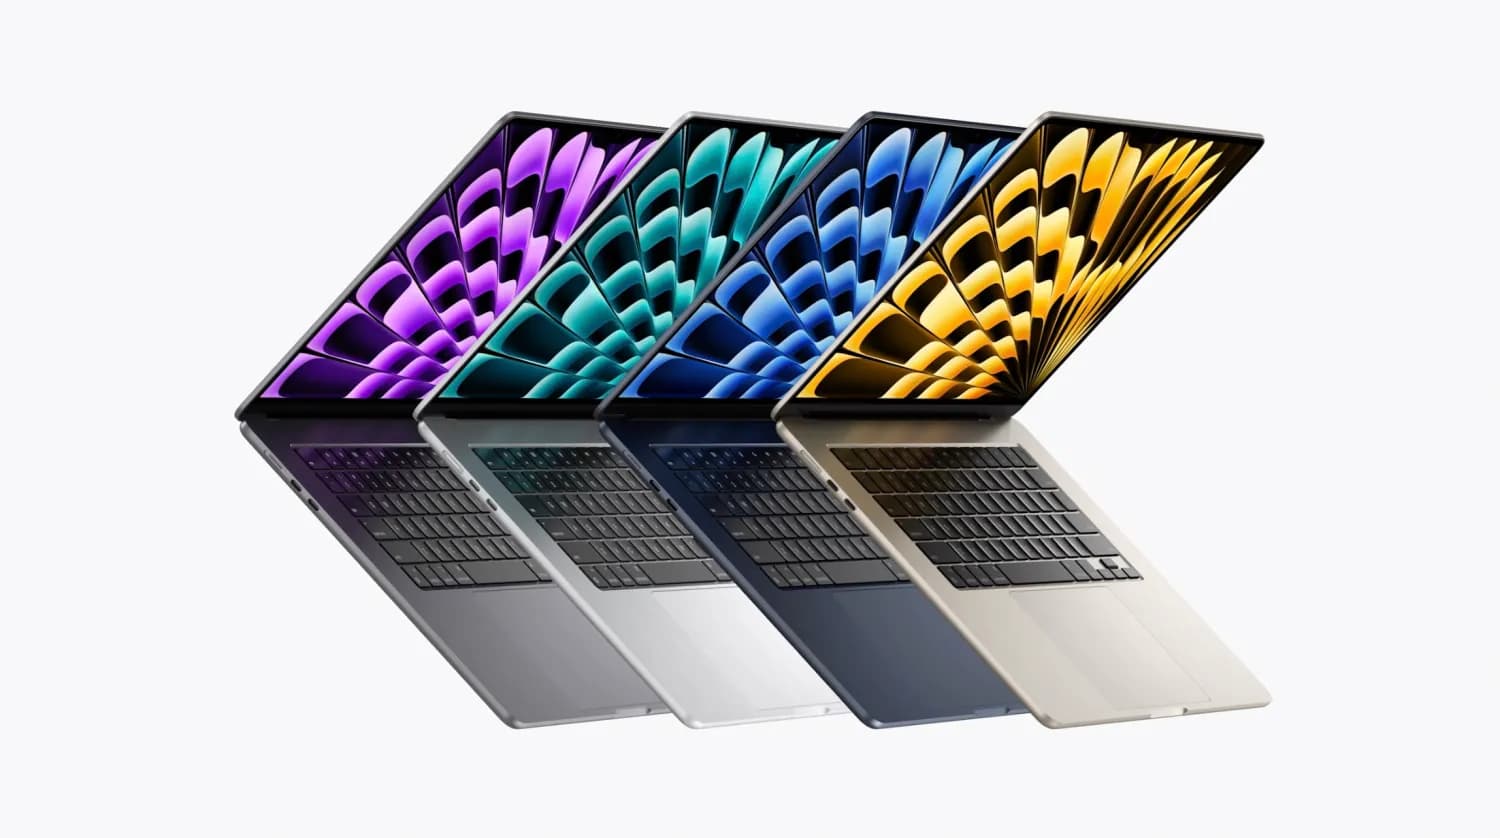 M3 MacBook Air 與 M2 MacBook Air顏色比較